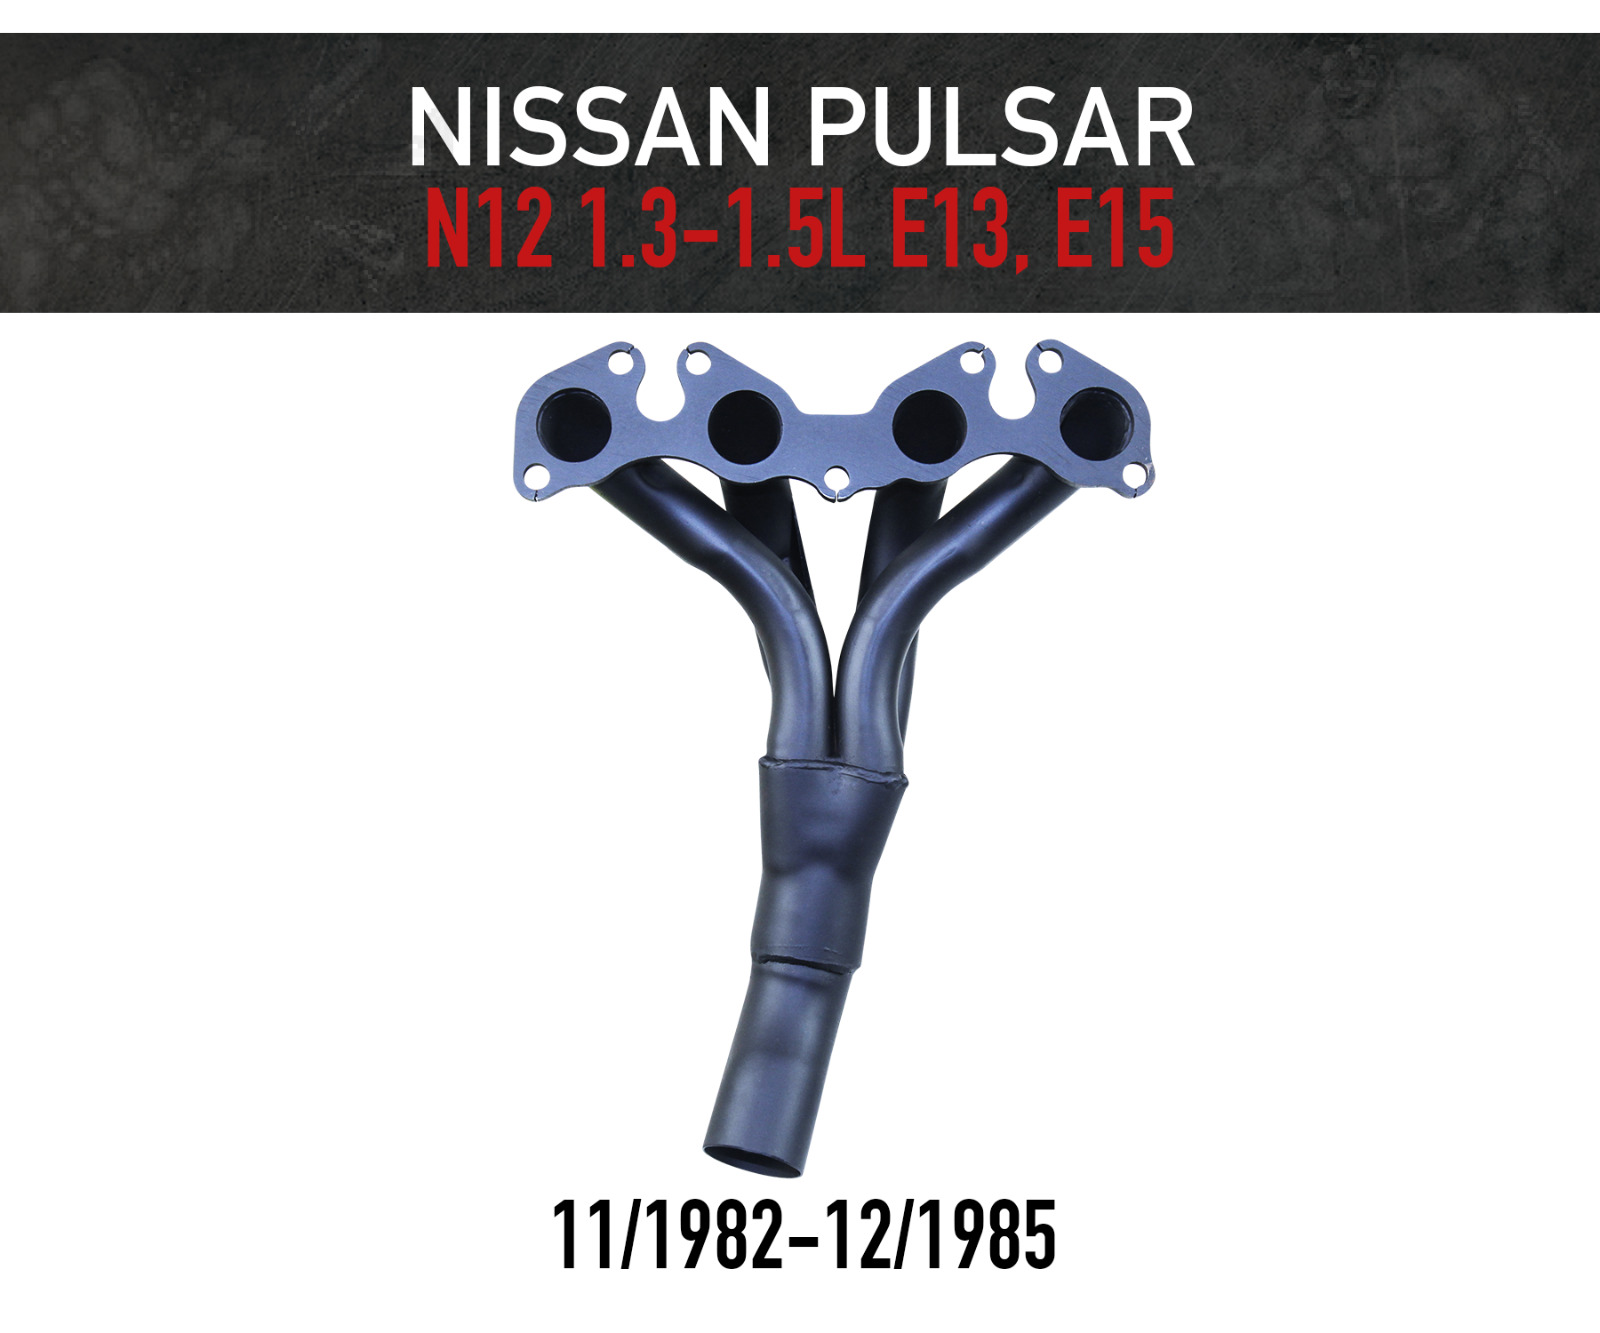 Header / Extractors for Nissan Pulsar N12 - E13 1.3L & E15 1.5L (1982-1985)